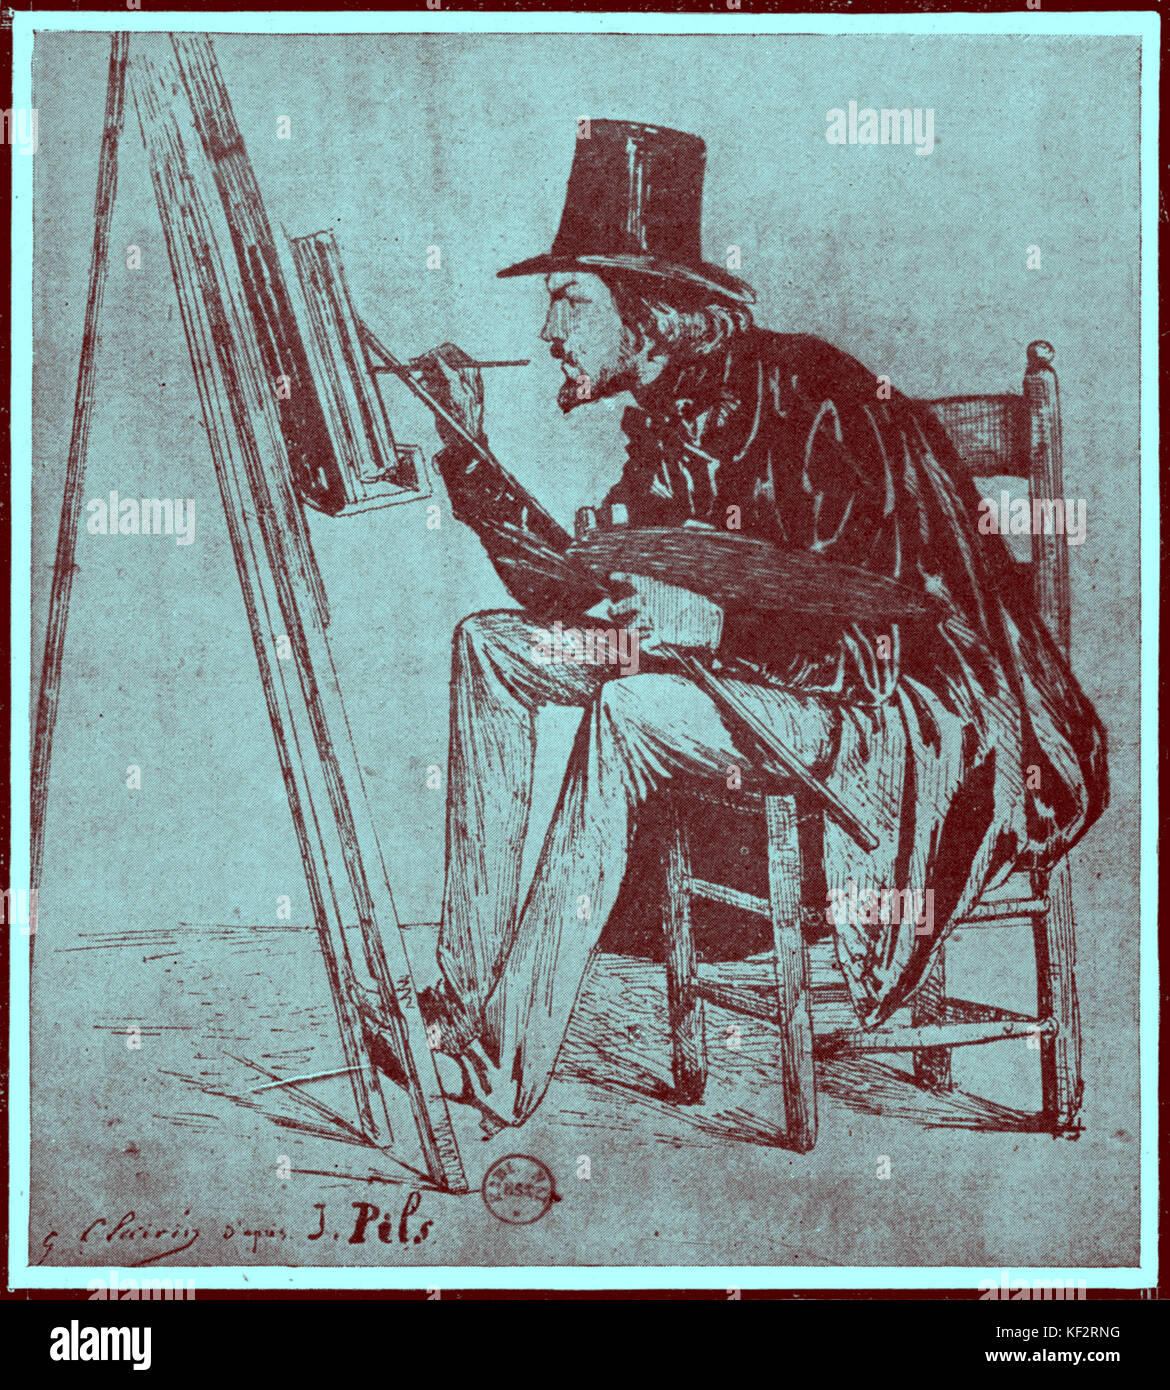 GOUNOD, Charles - Malerei an der Staffelei, die in Rom, Pils" Studio französische Komponist 1818-1893 Stockfoto